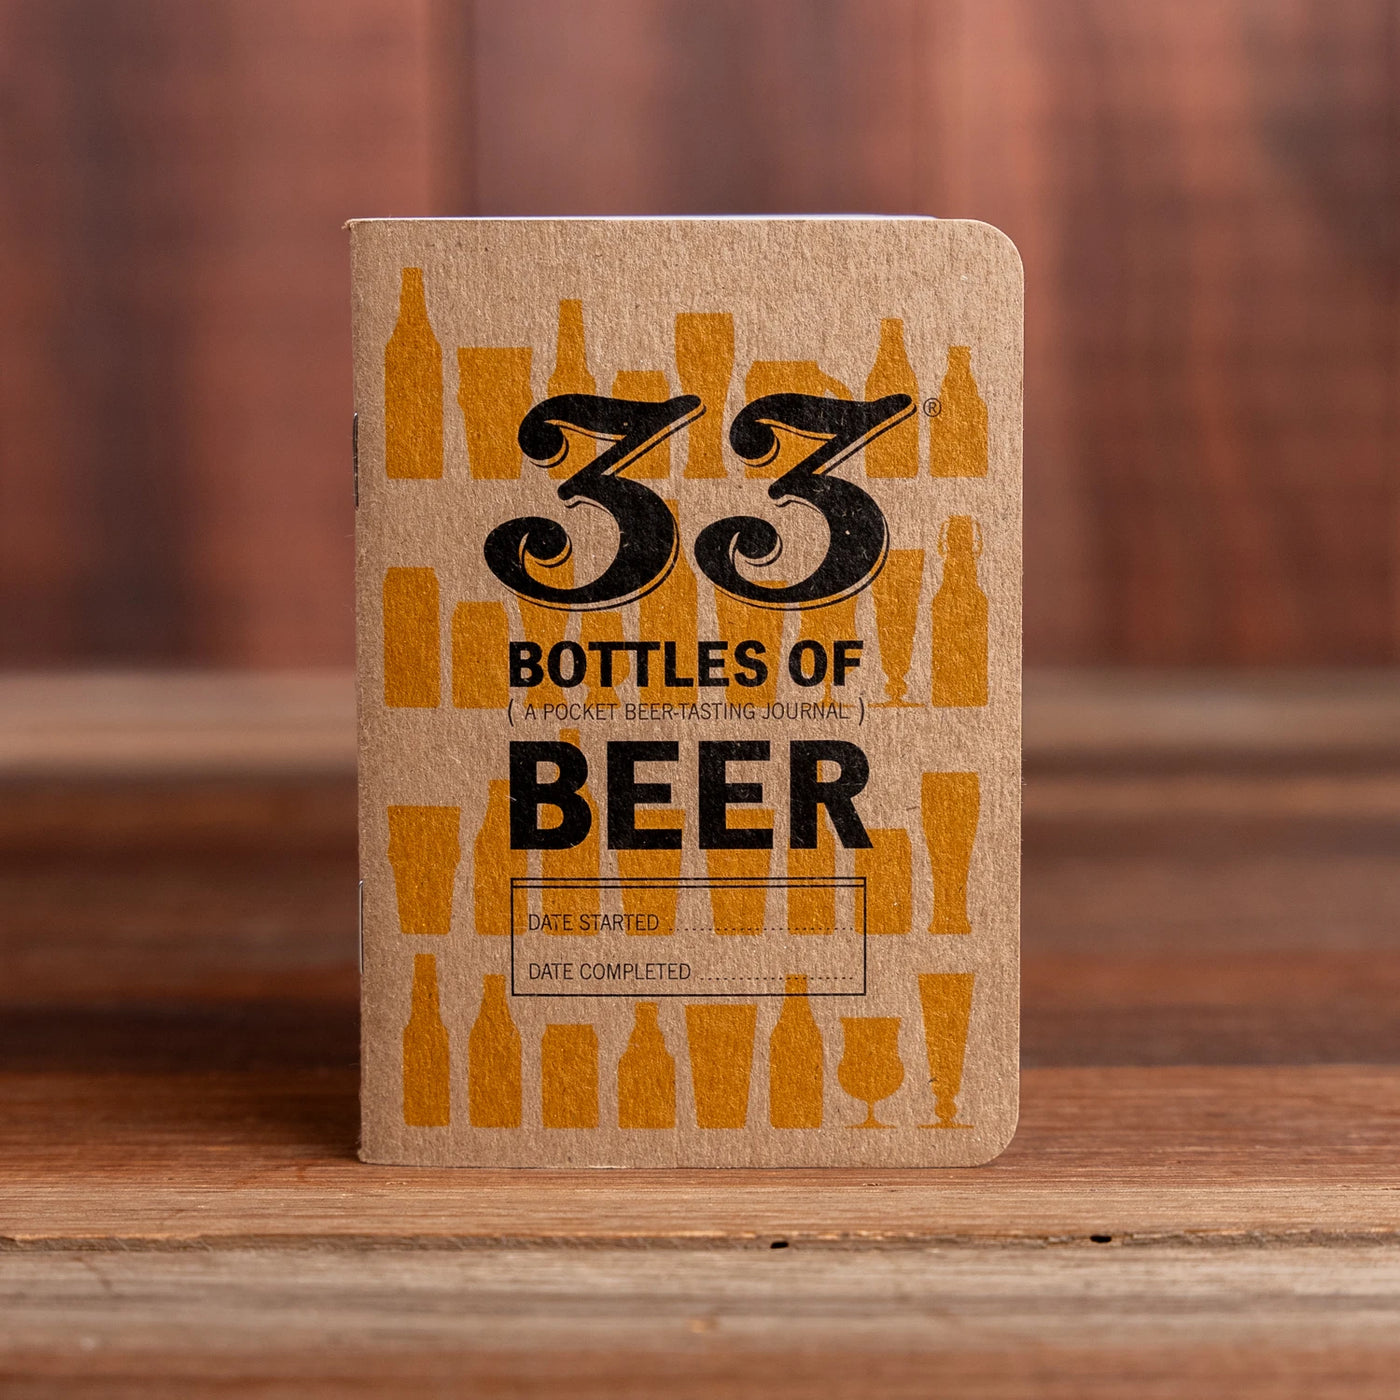 33 Bottles of Beer Tasting Notebook